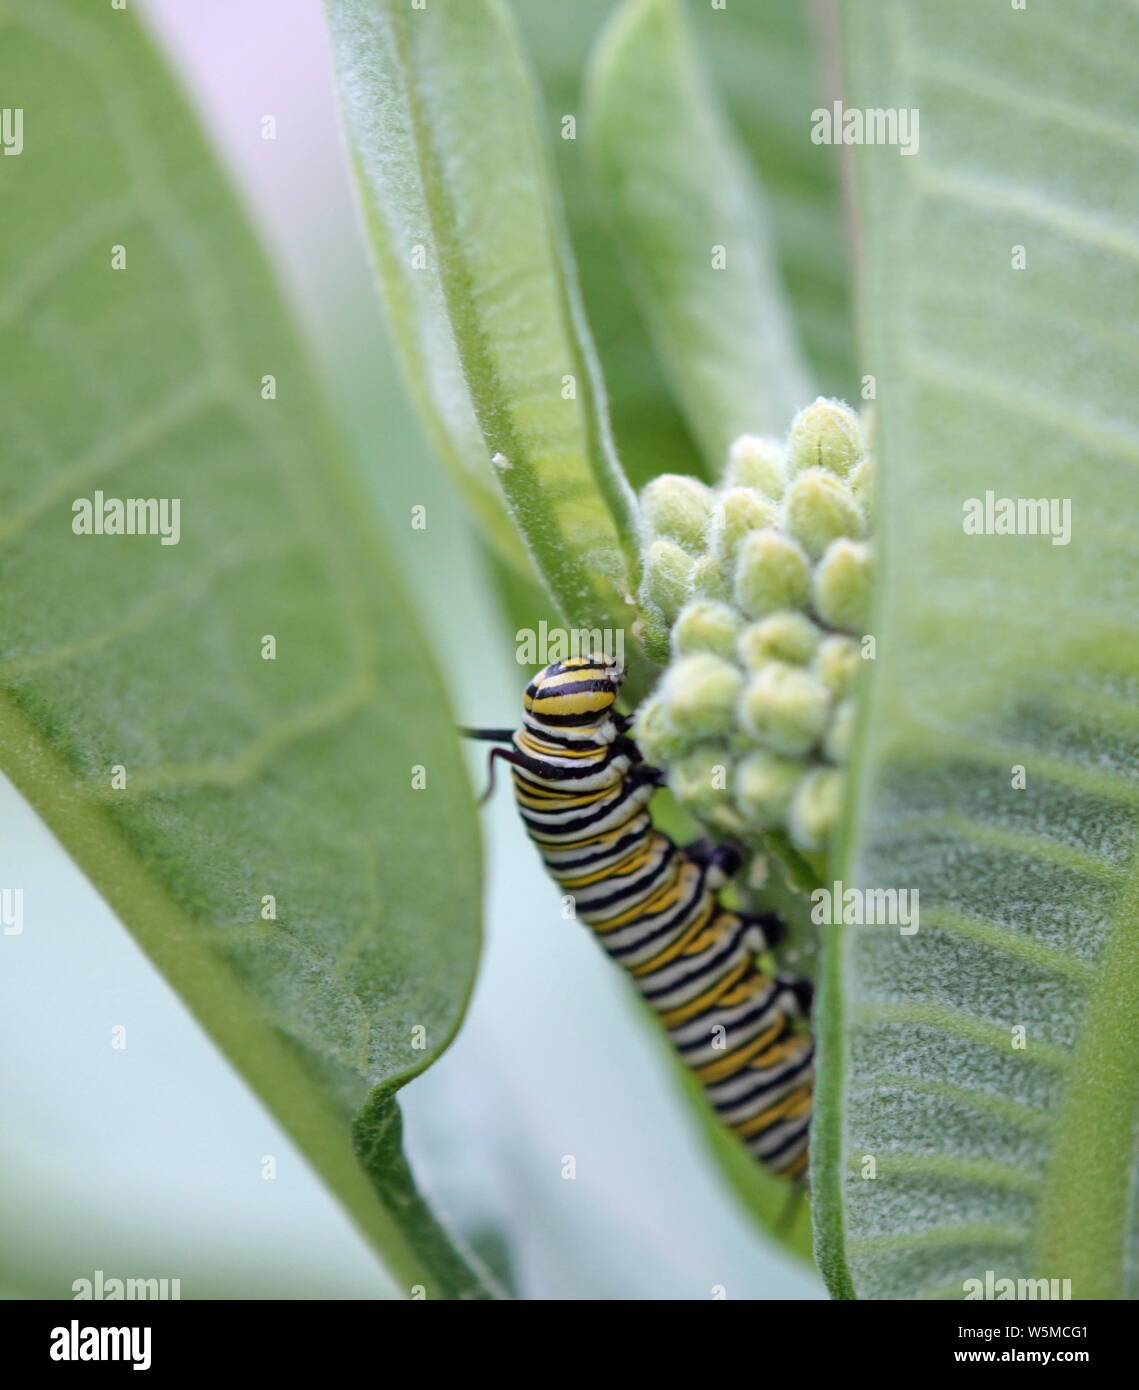 La oruga de la mariposa monarca en una hoja Foto de stock